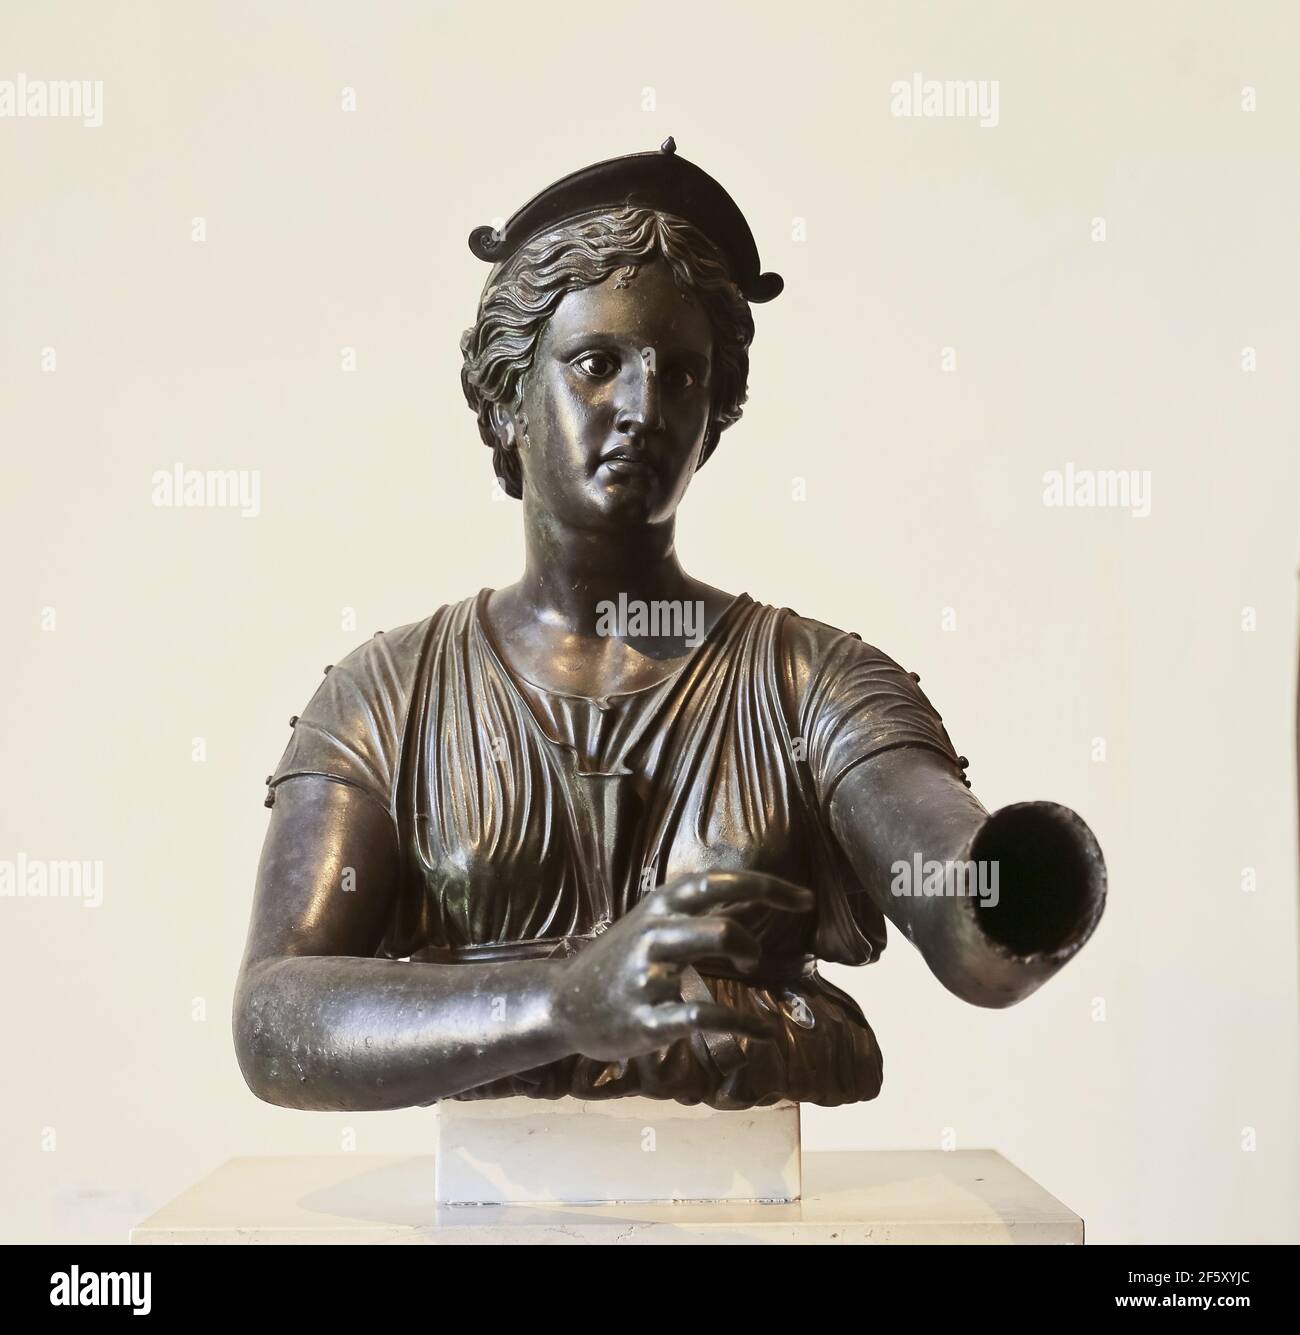 Busto de Diana (Artemis). 2nd céntimos. BC período helenístico. Templo de Apolo, Pompeya. Estatua de bronce. Museo Arqueológico de Nápoles, Italia. Foto de stock